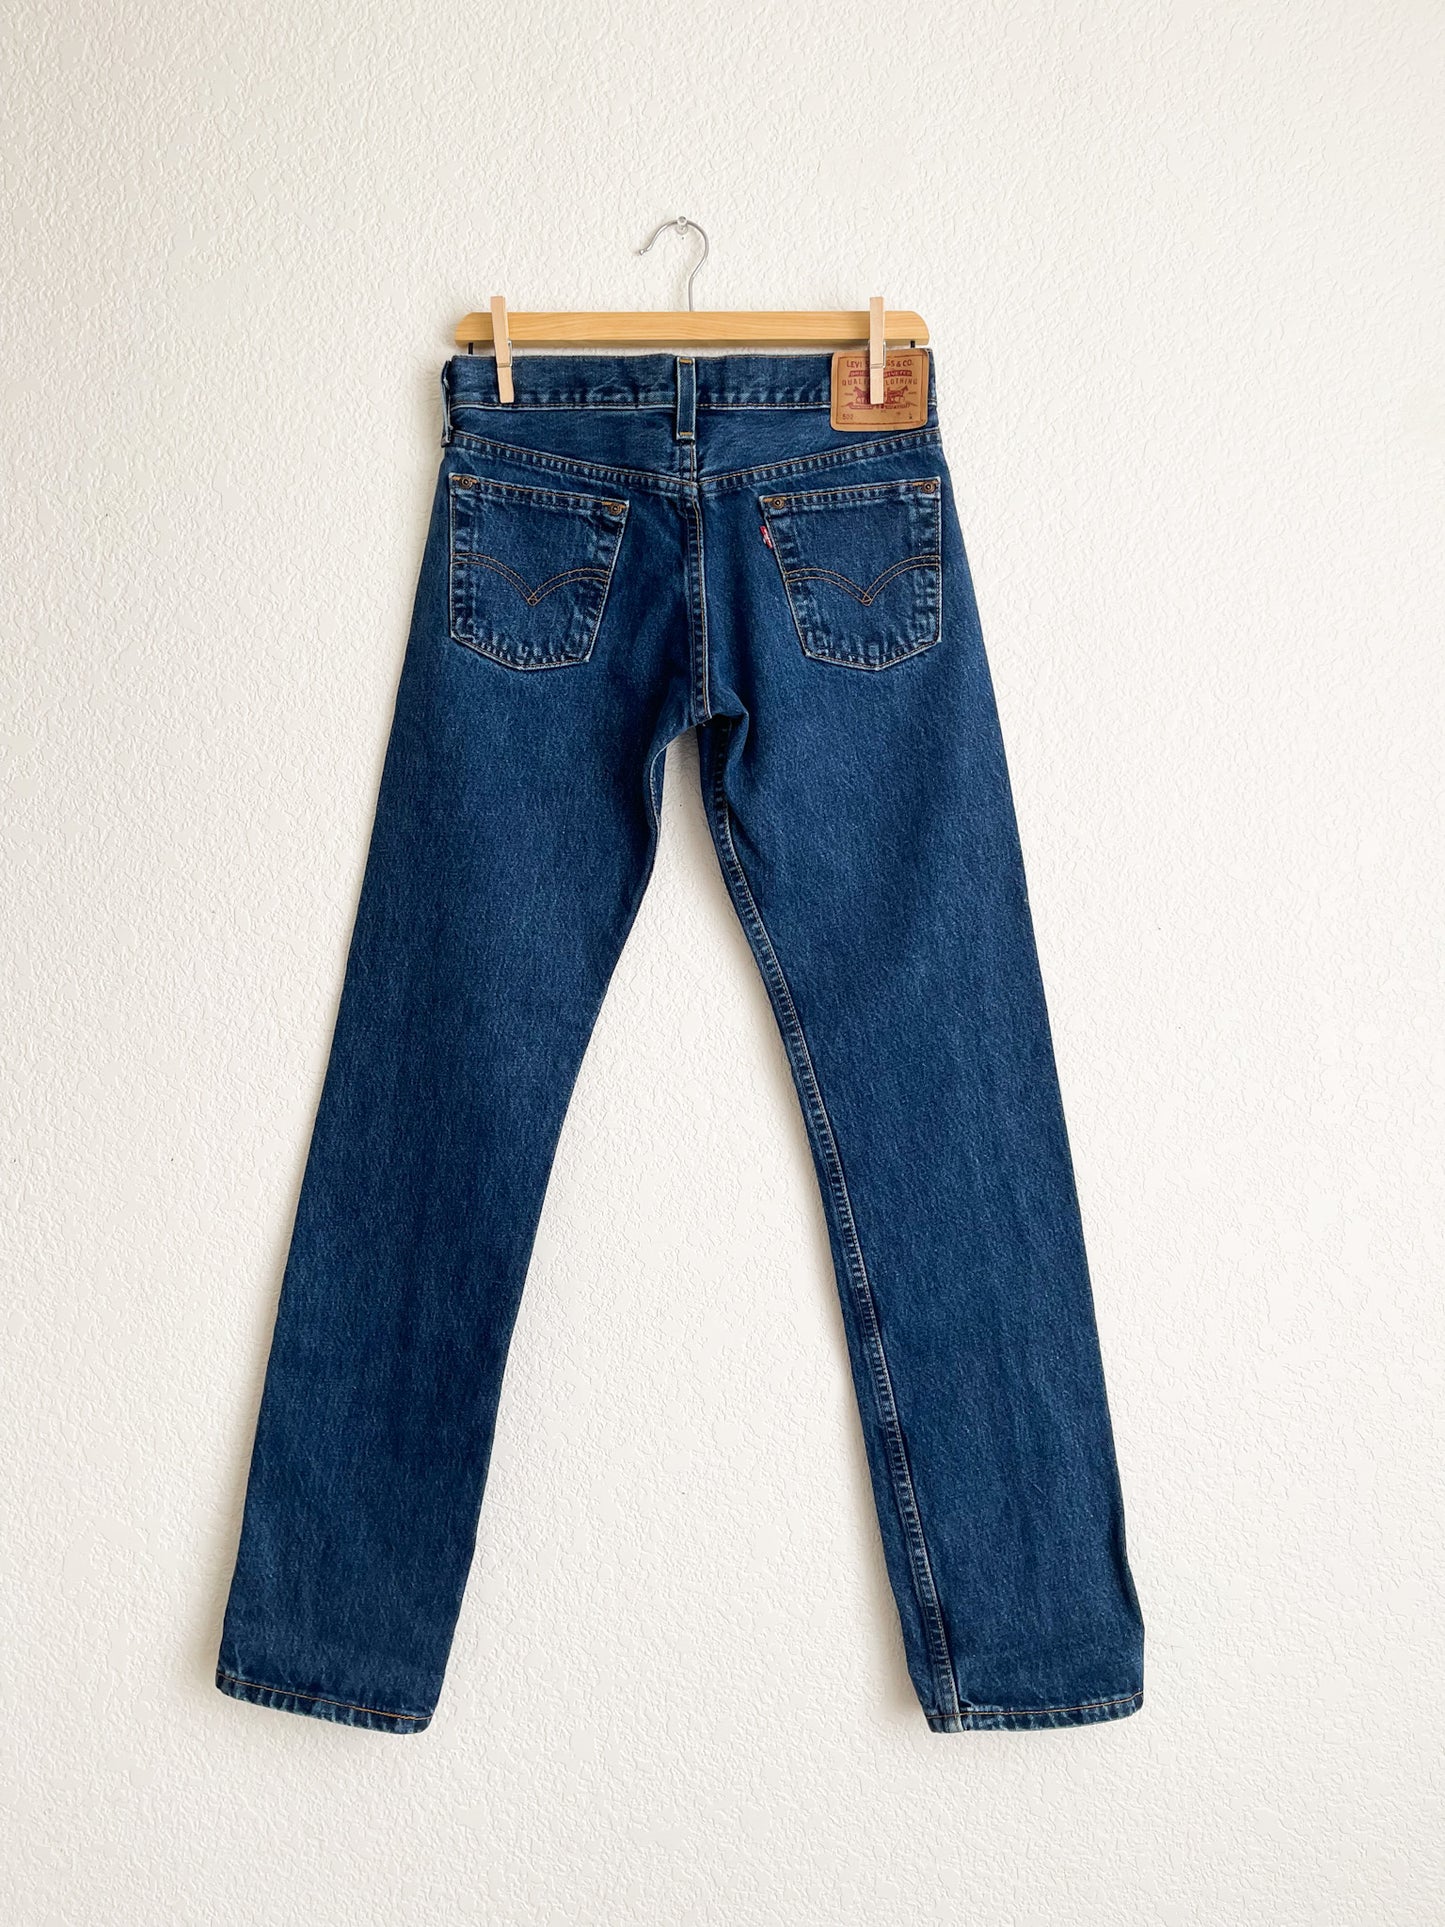 Vintage Levi's 502 Jeans - 29" Waist